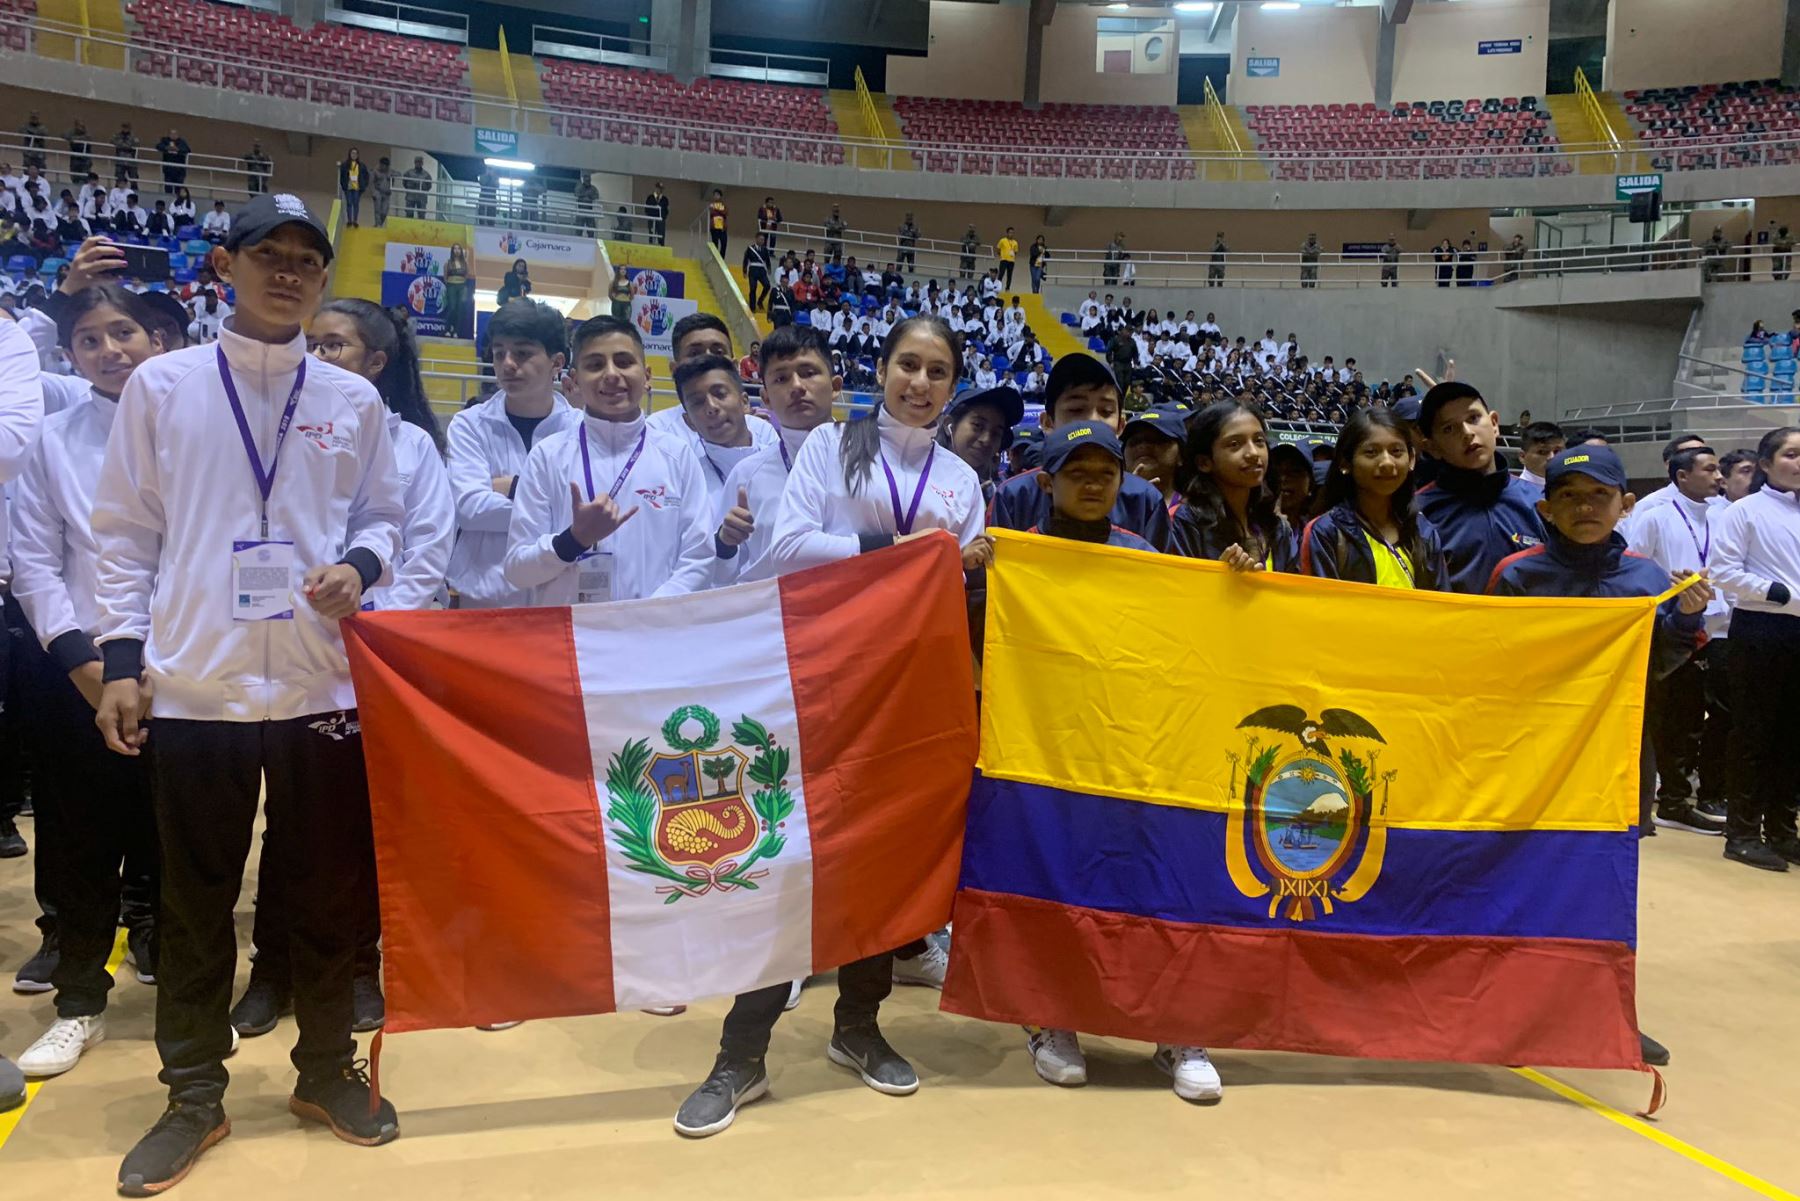 Unos 1,000 deportistas compiten en los Juegos Binacionales Perú-Ecuador que se desarrolla en Cajamarca. ANDINA/Difusión